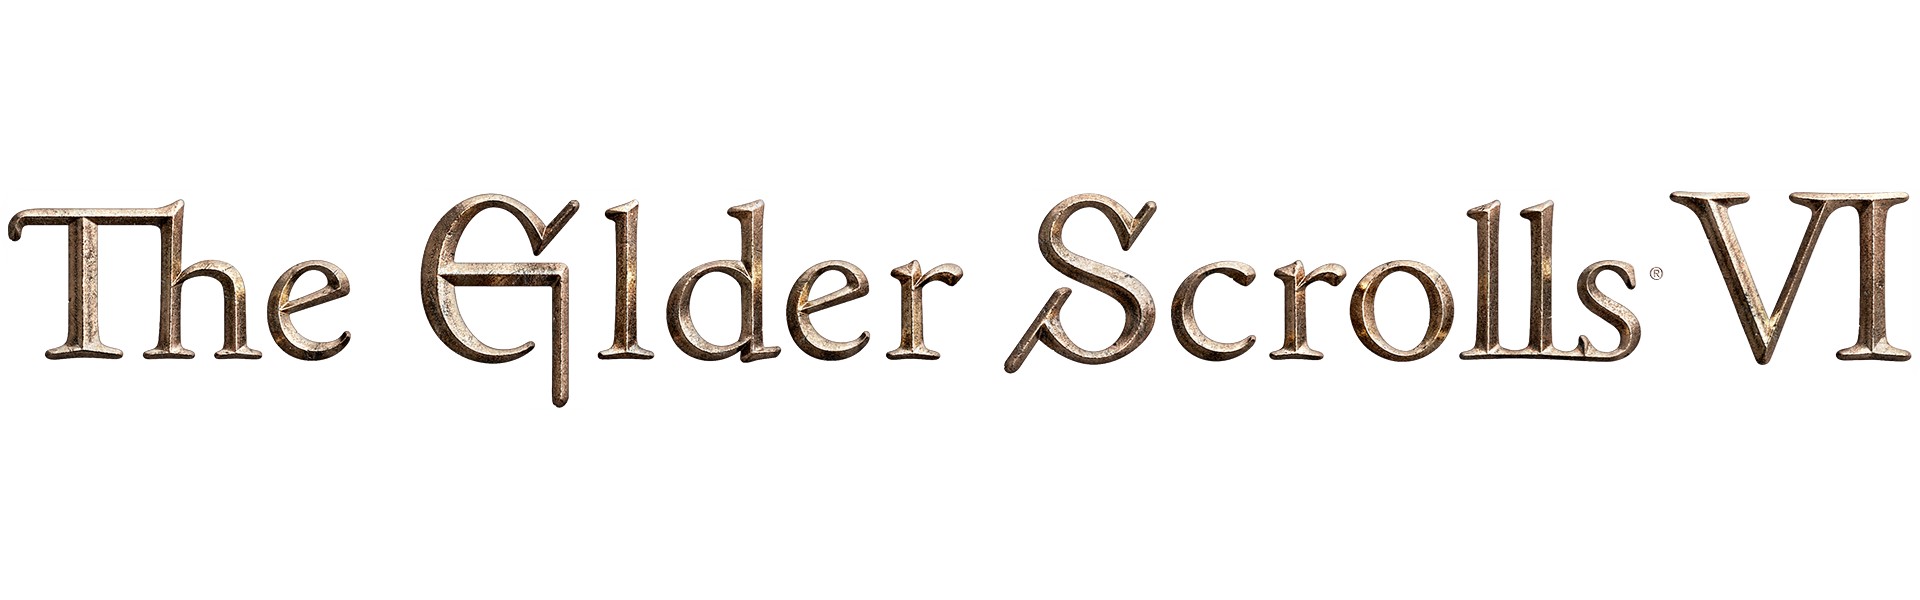 Compras The Elder Scrolls VI jogo de PC